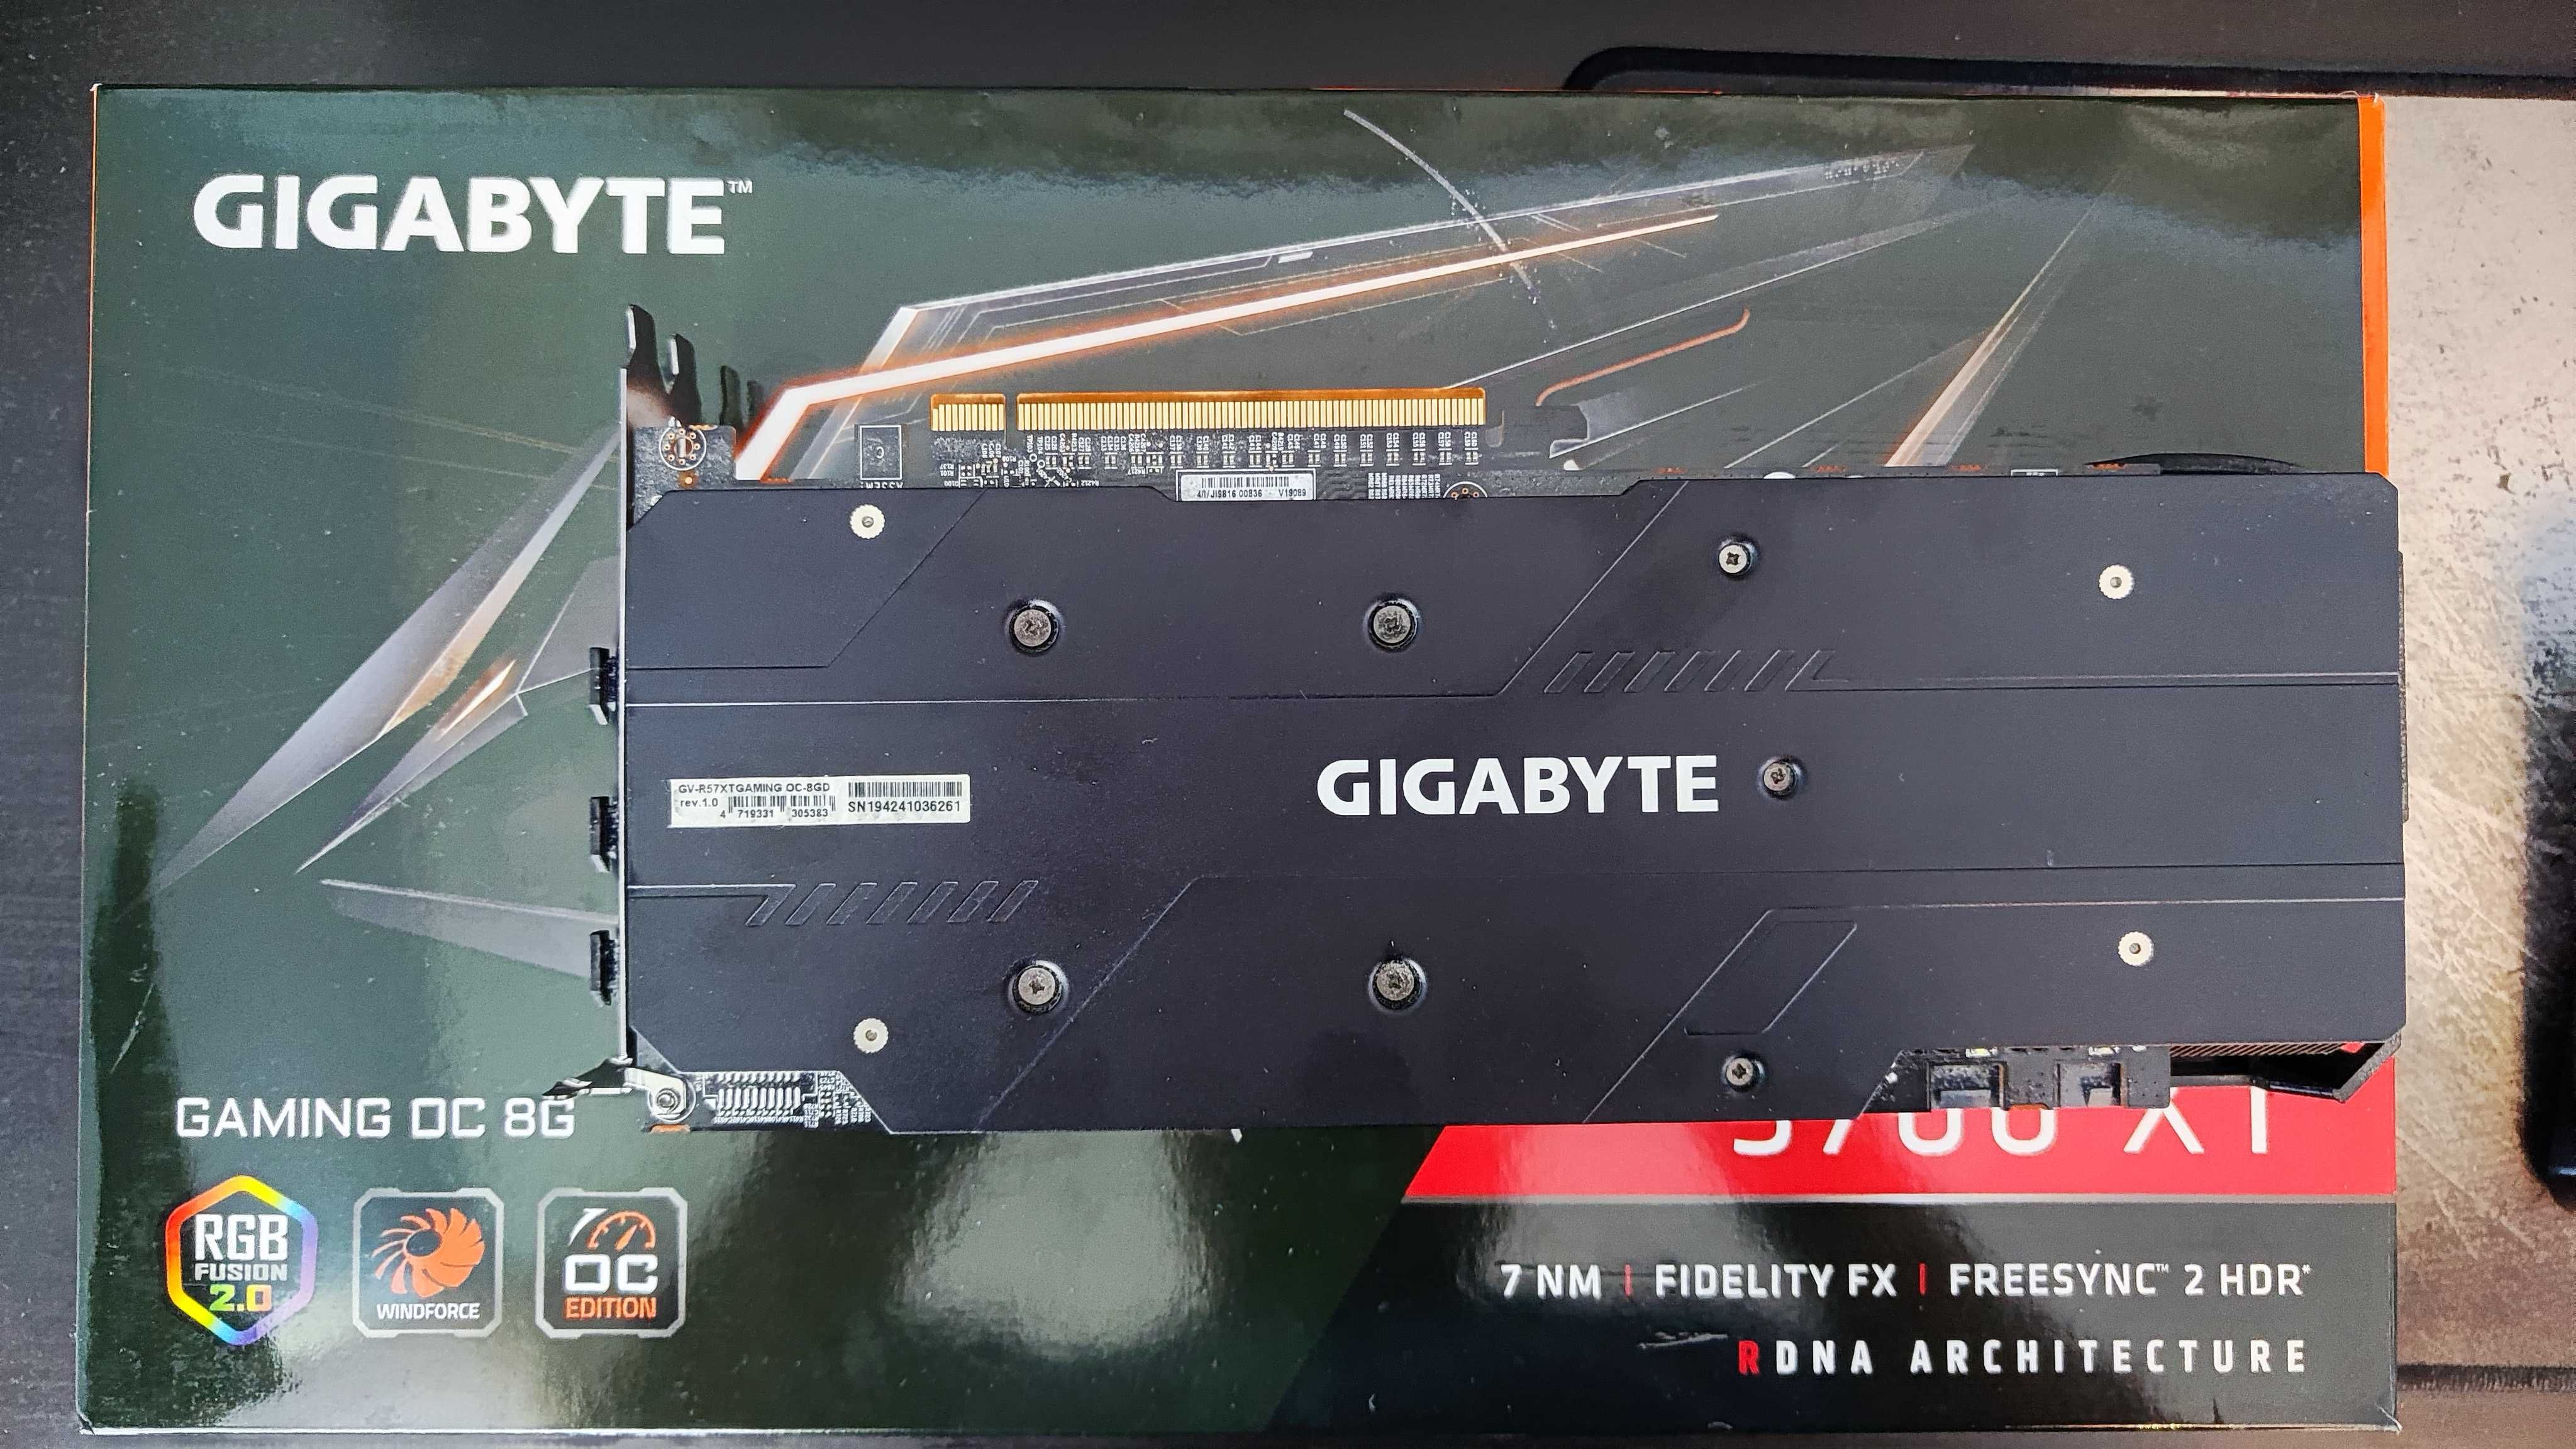 Gigabyte AMD Radeion RX 5700 XT Gaming OC 8G (Rev. 1.0)